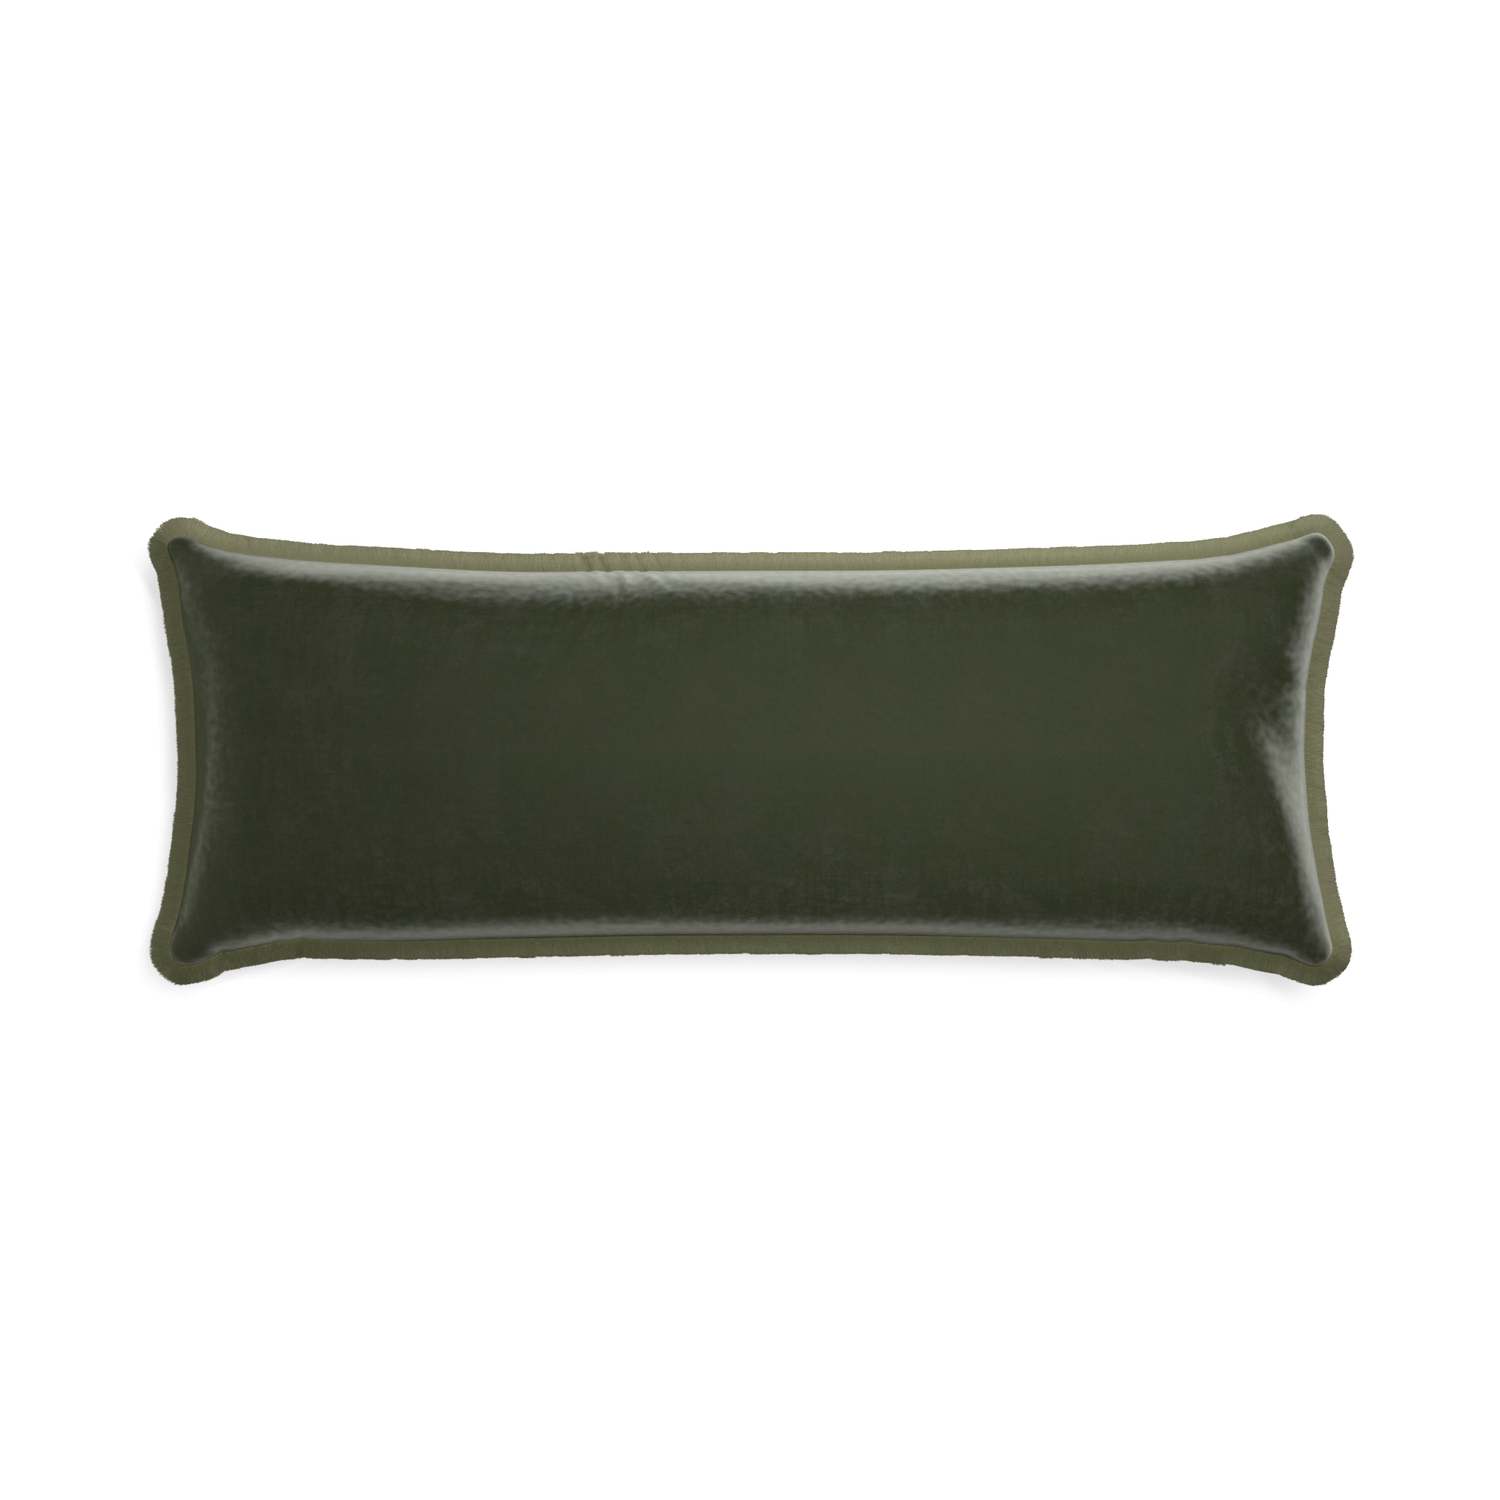 rectangle fern green velvet pillow with sage green fringe